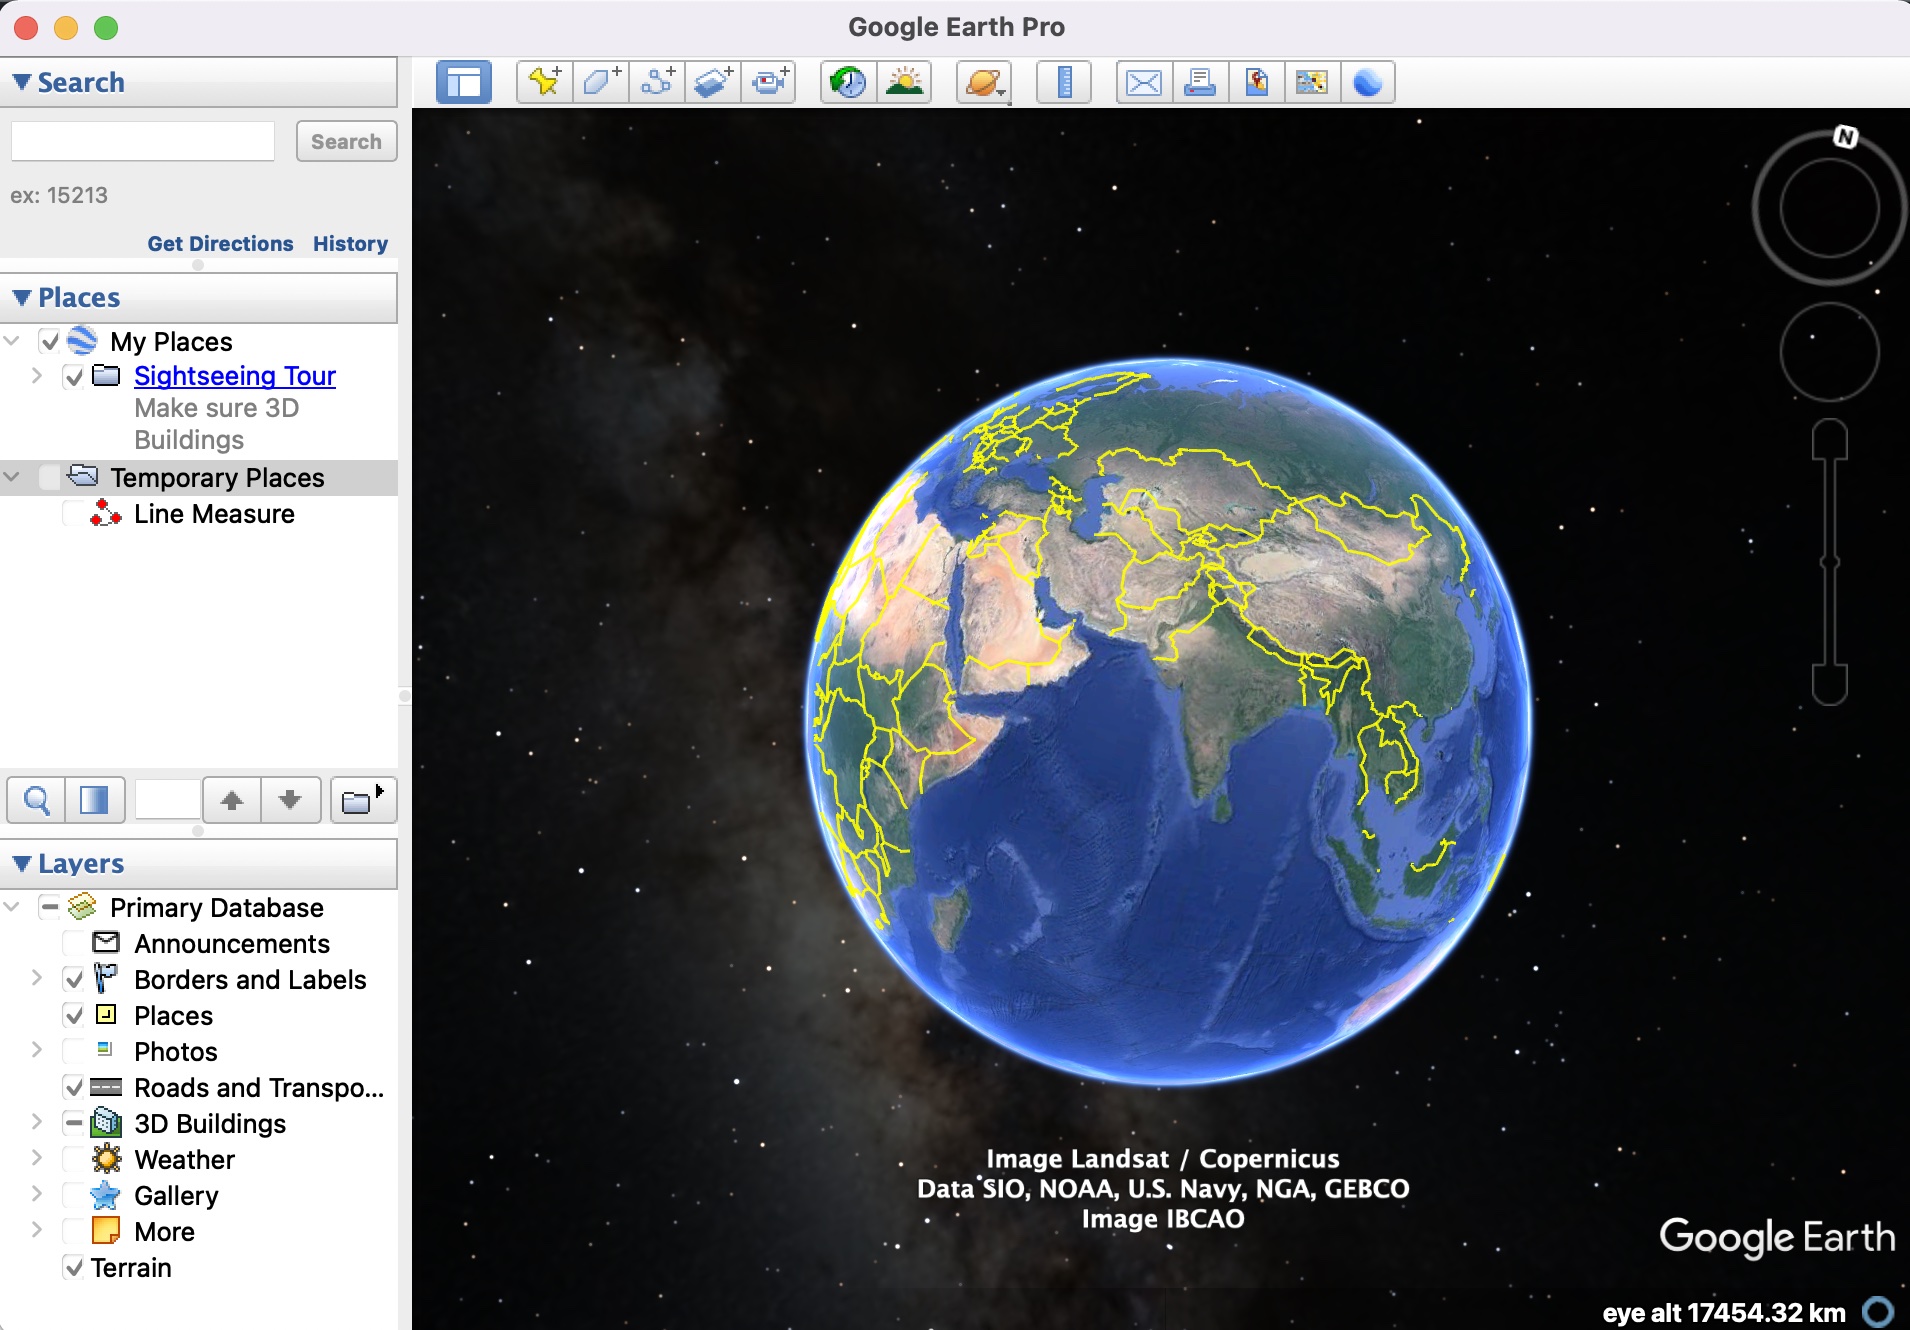 क्या आप Google धरती पर स्थानों पर रूपरेखा लागू कर सकते हैं?